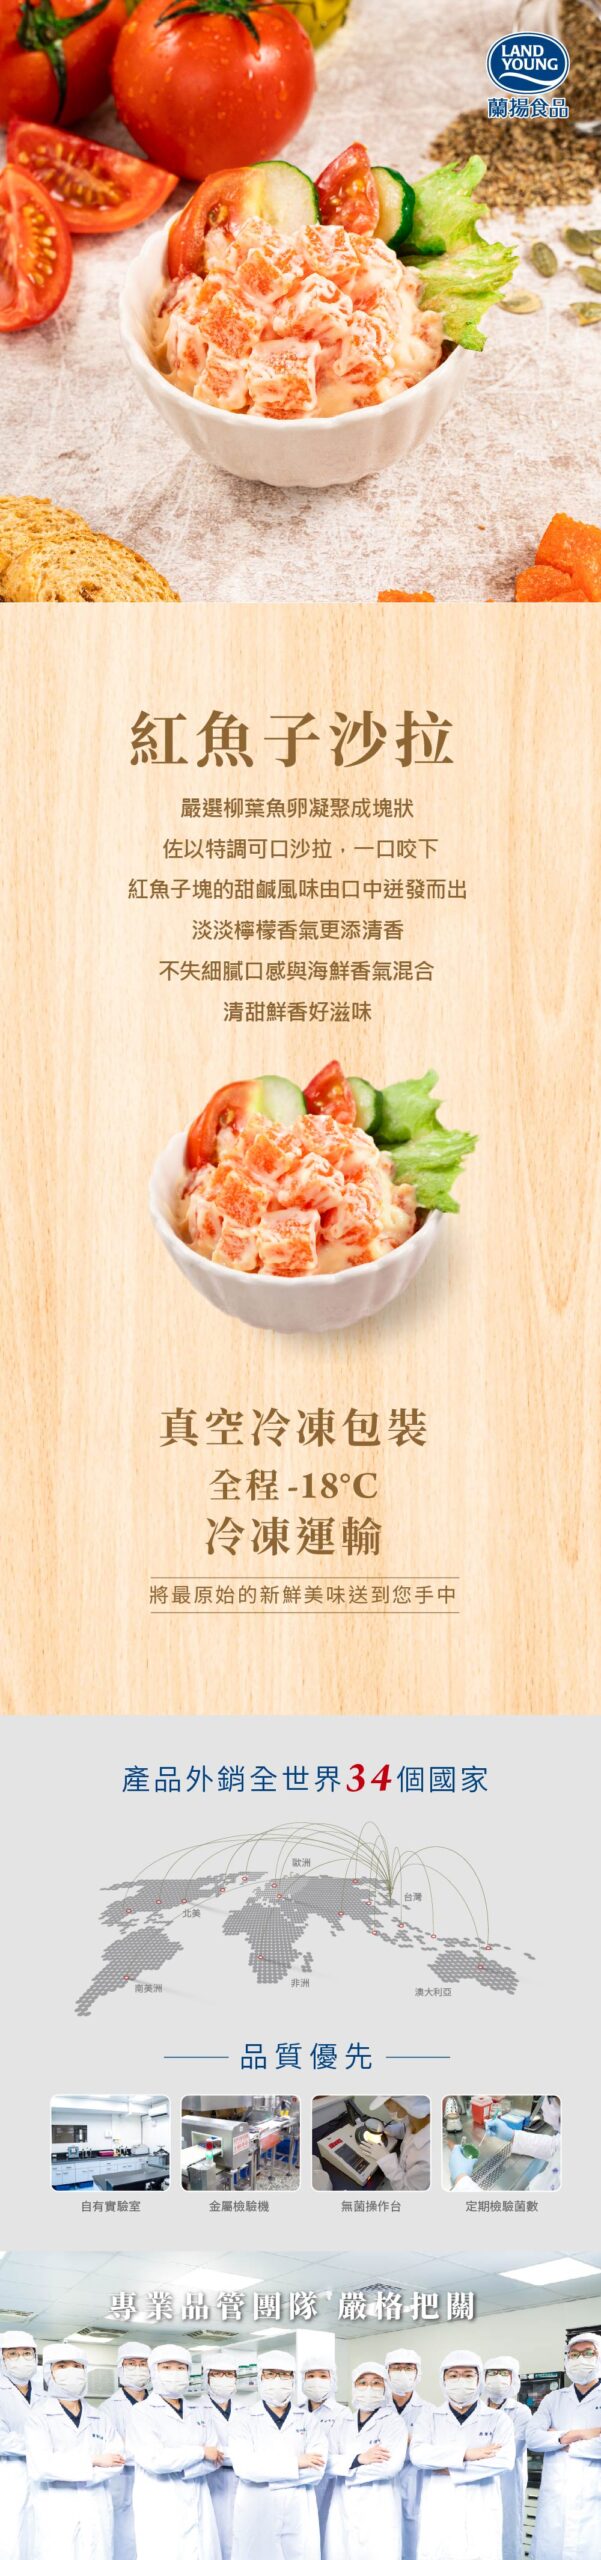 紅魚子沙拉-中文